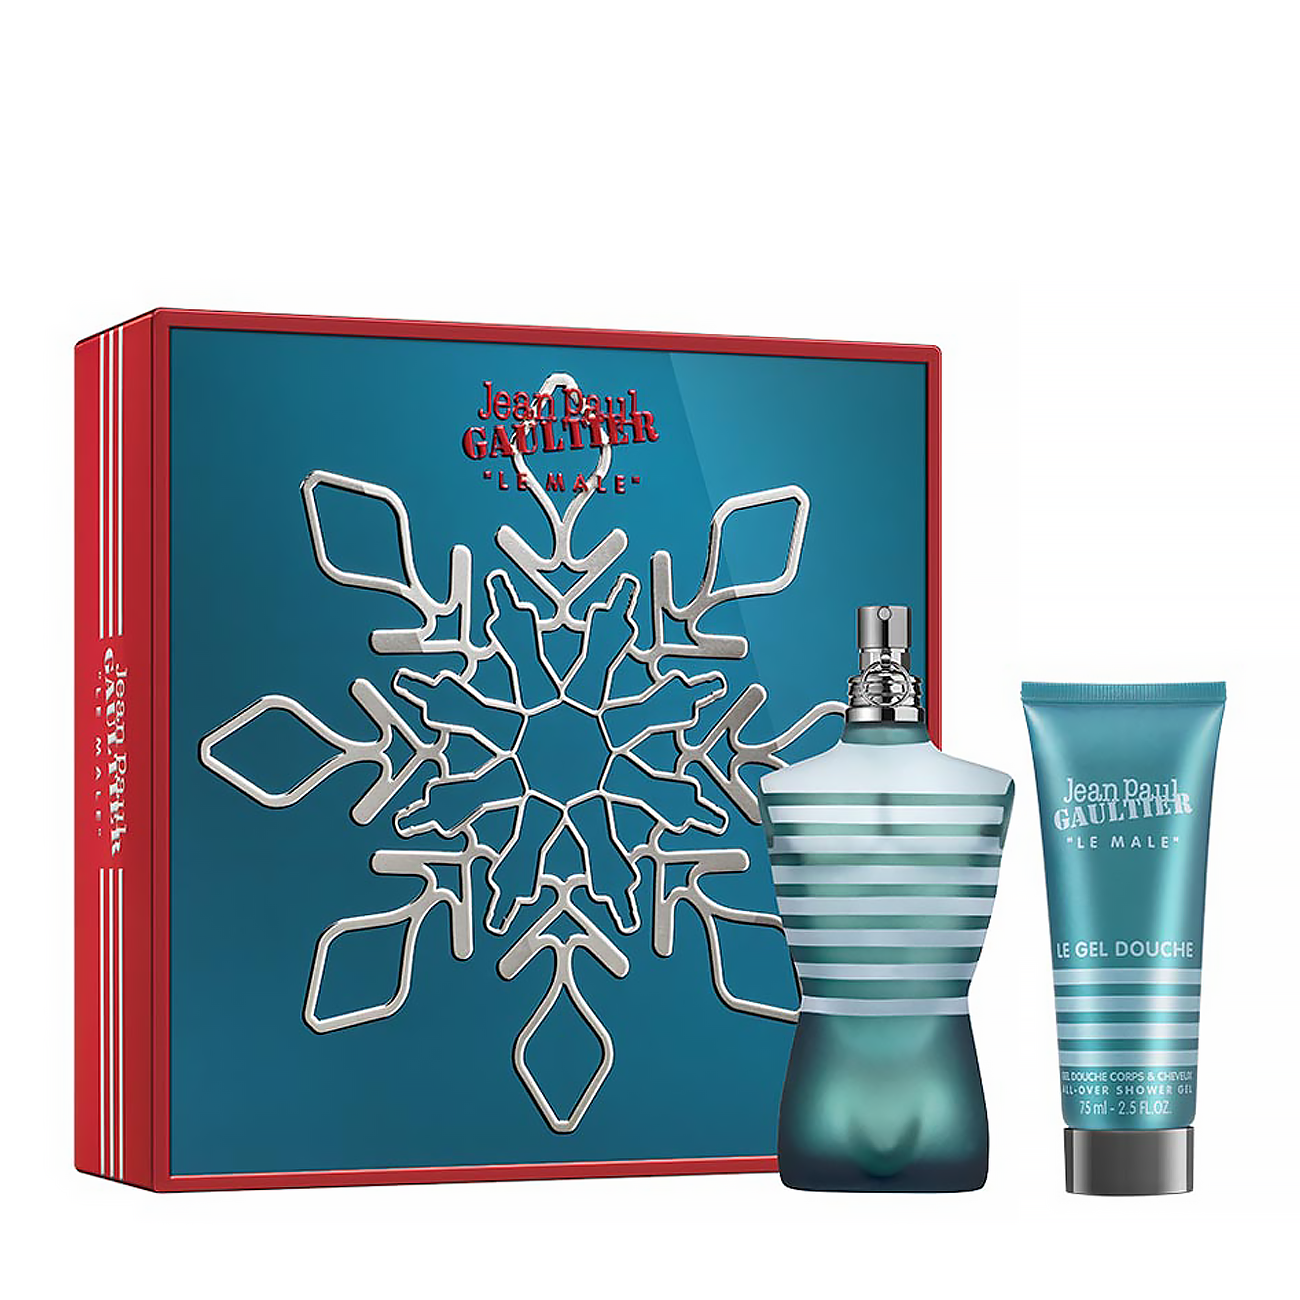 Set parfumuri Jean Paul Gaultier LE MALE SET 200ml cu comanda online